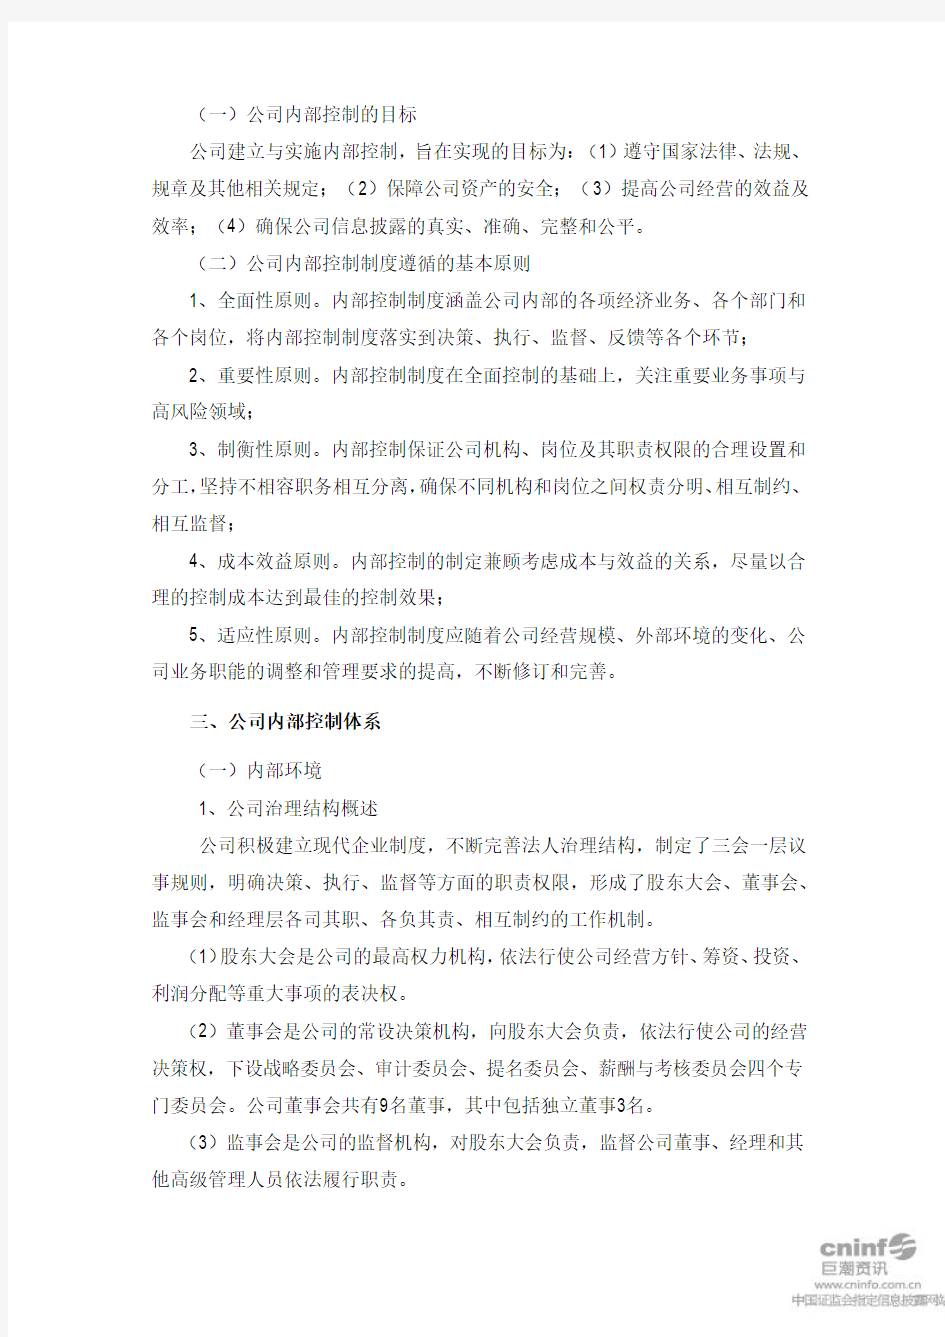 九阳股份：董事会关于公司2010年度内部控制的自我评价报告 2011-03-16